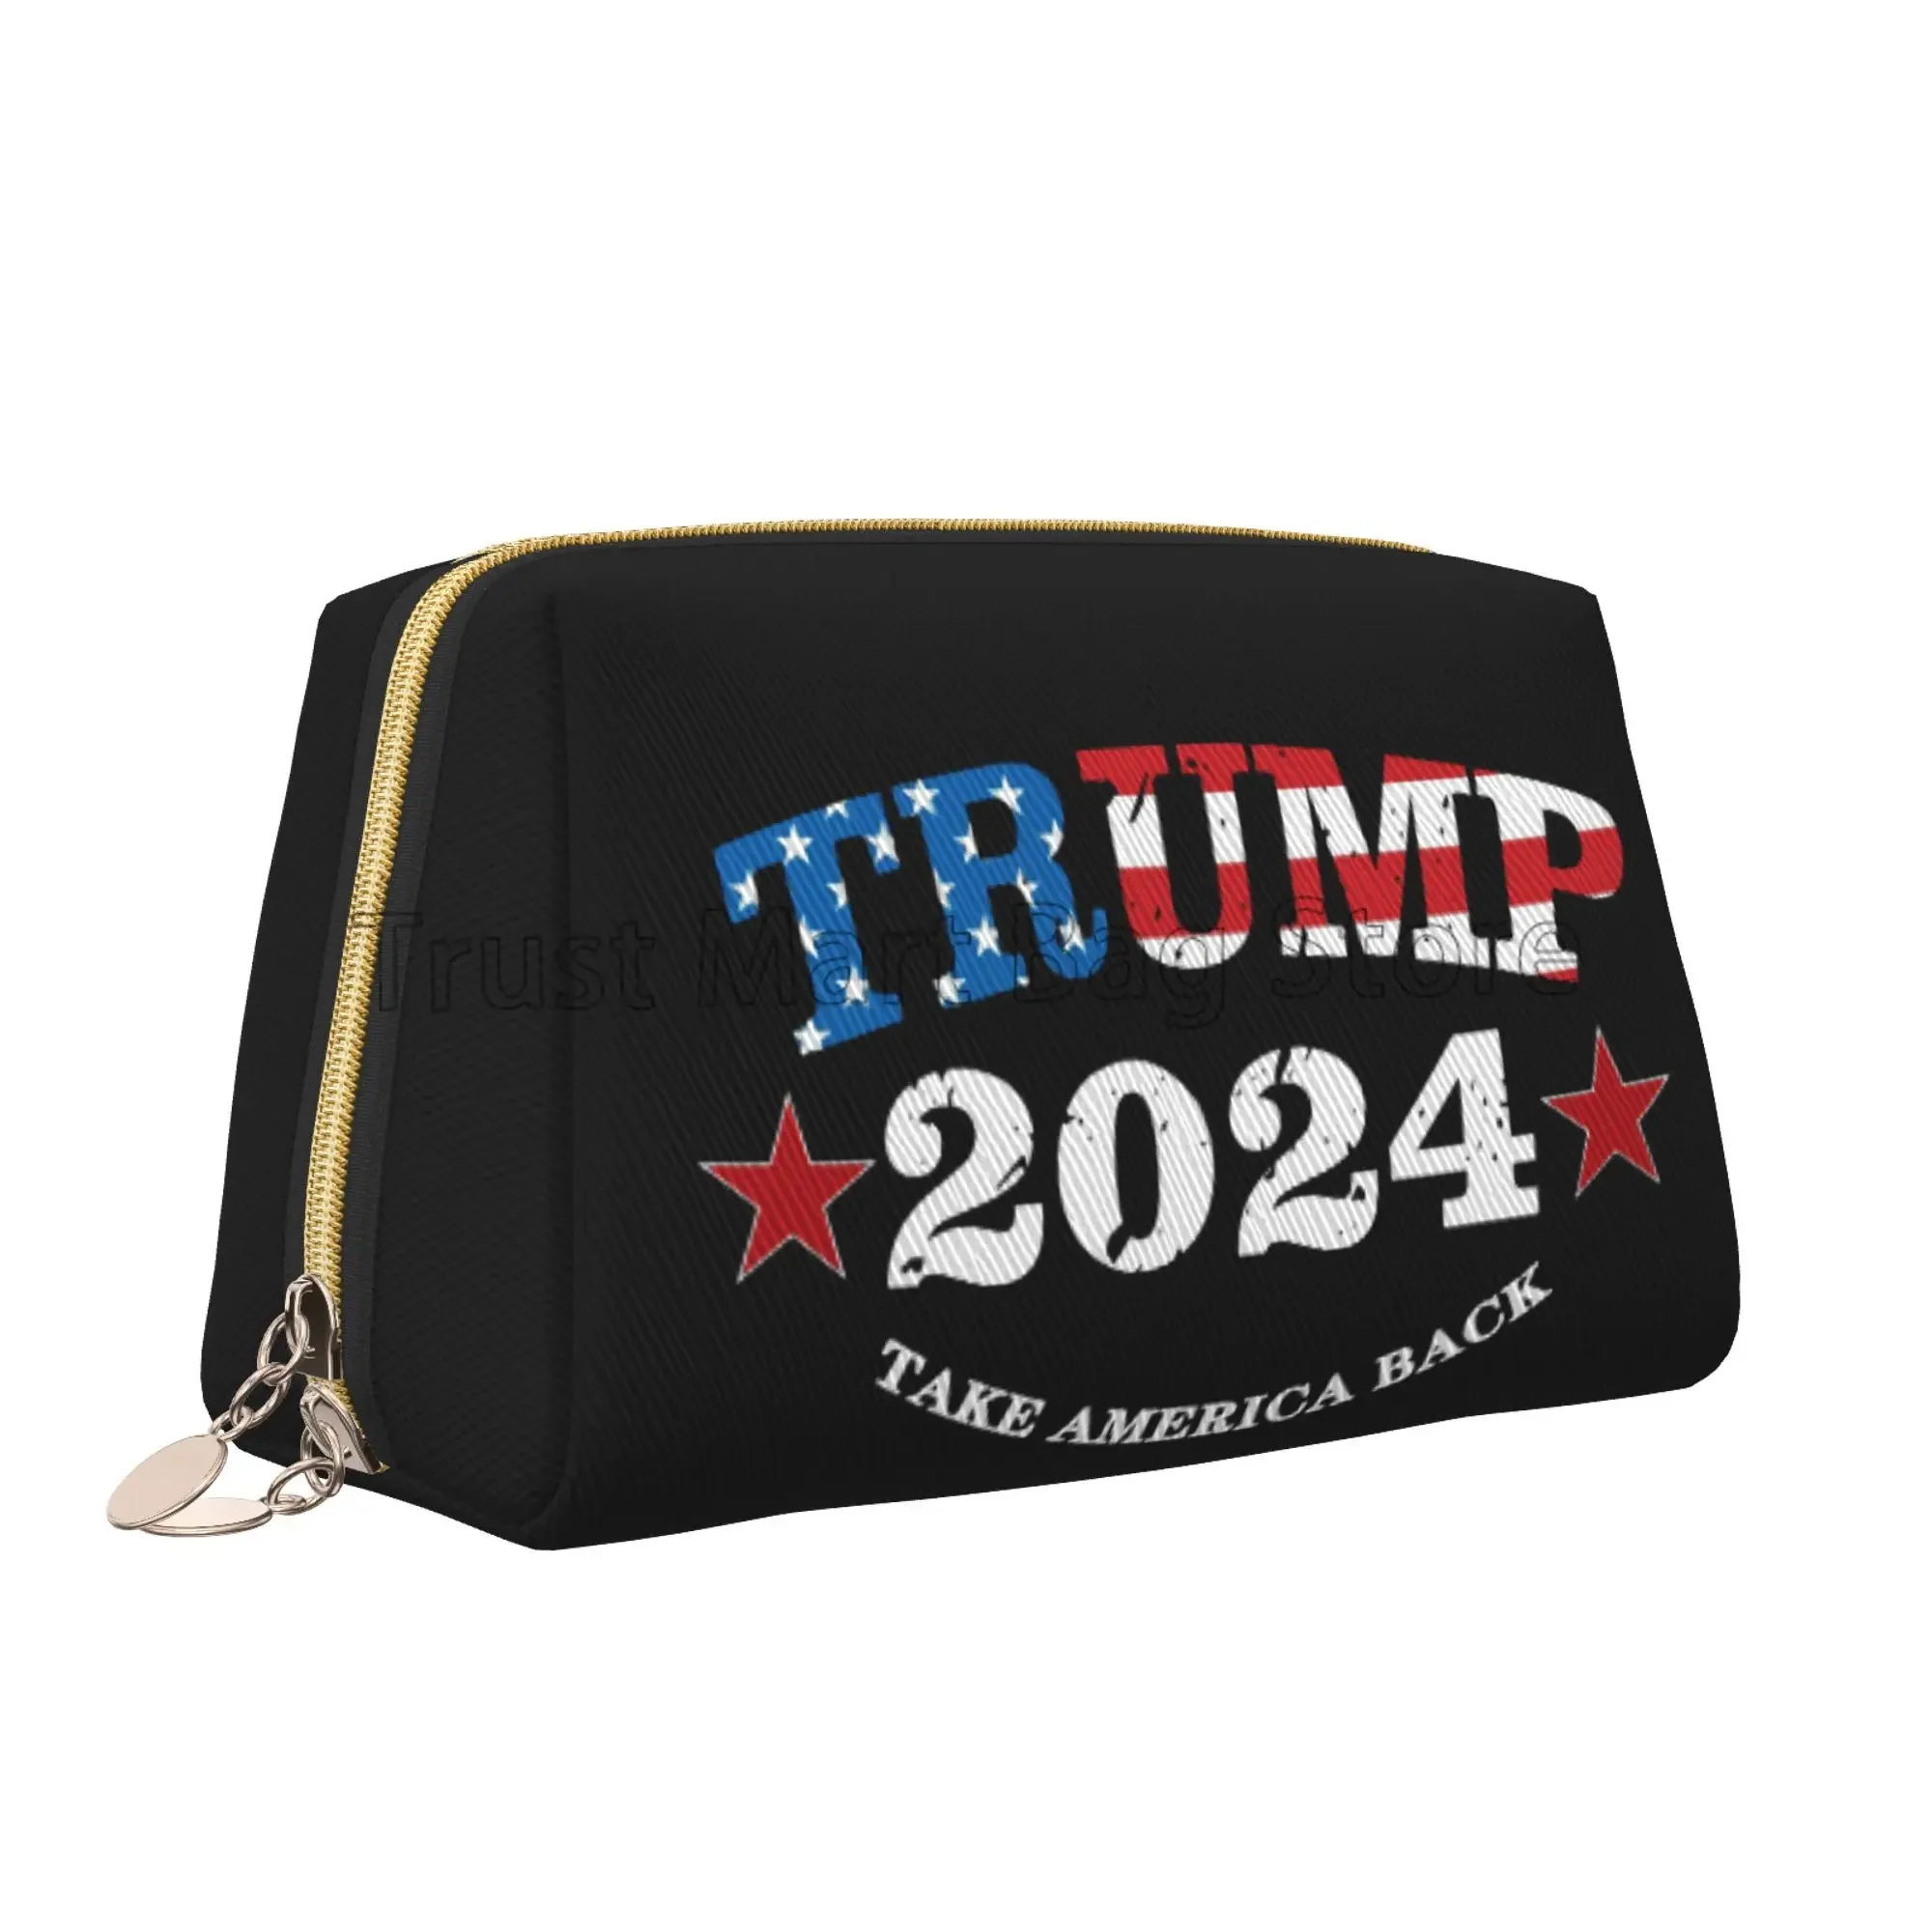 

Trump 2024 Make America Great Again Print Makeup Bag Leather Travel Cosmetic Organizer Bag Women Large Capacity Toiletries Bags